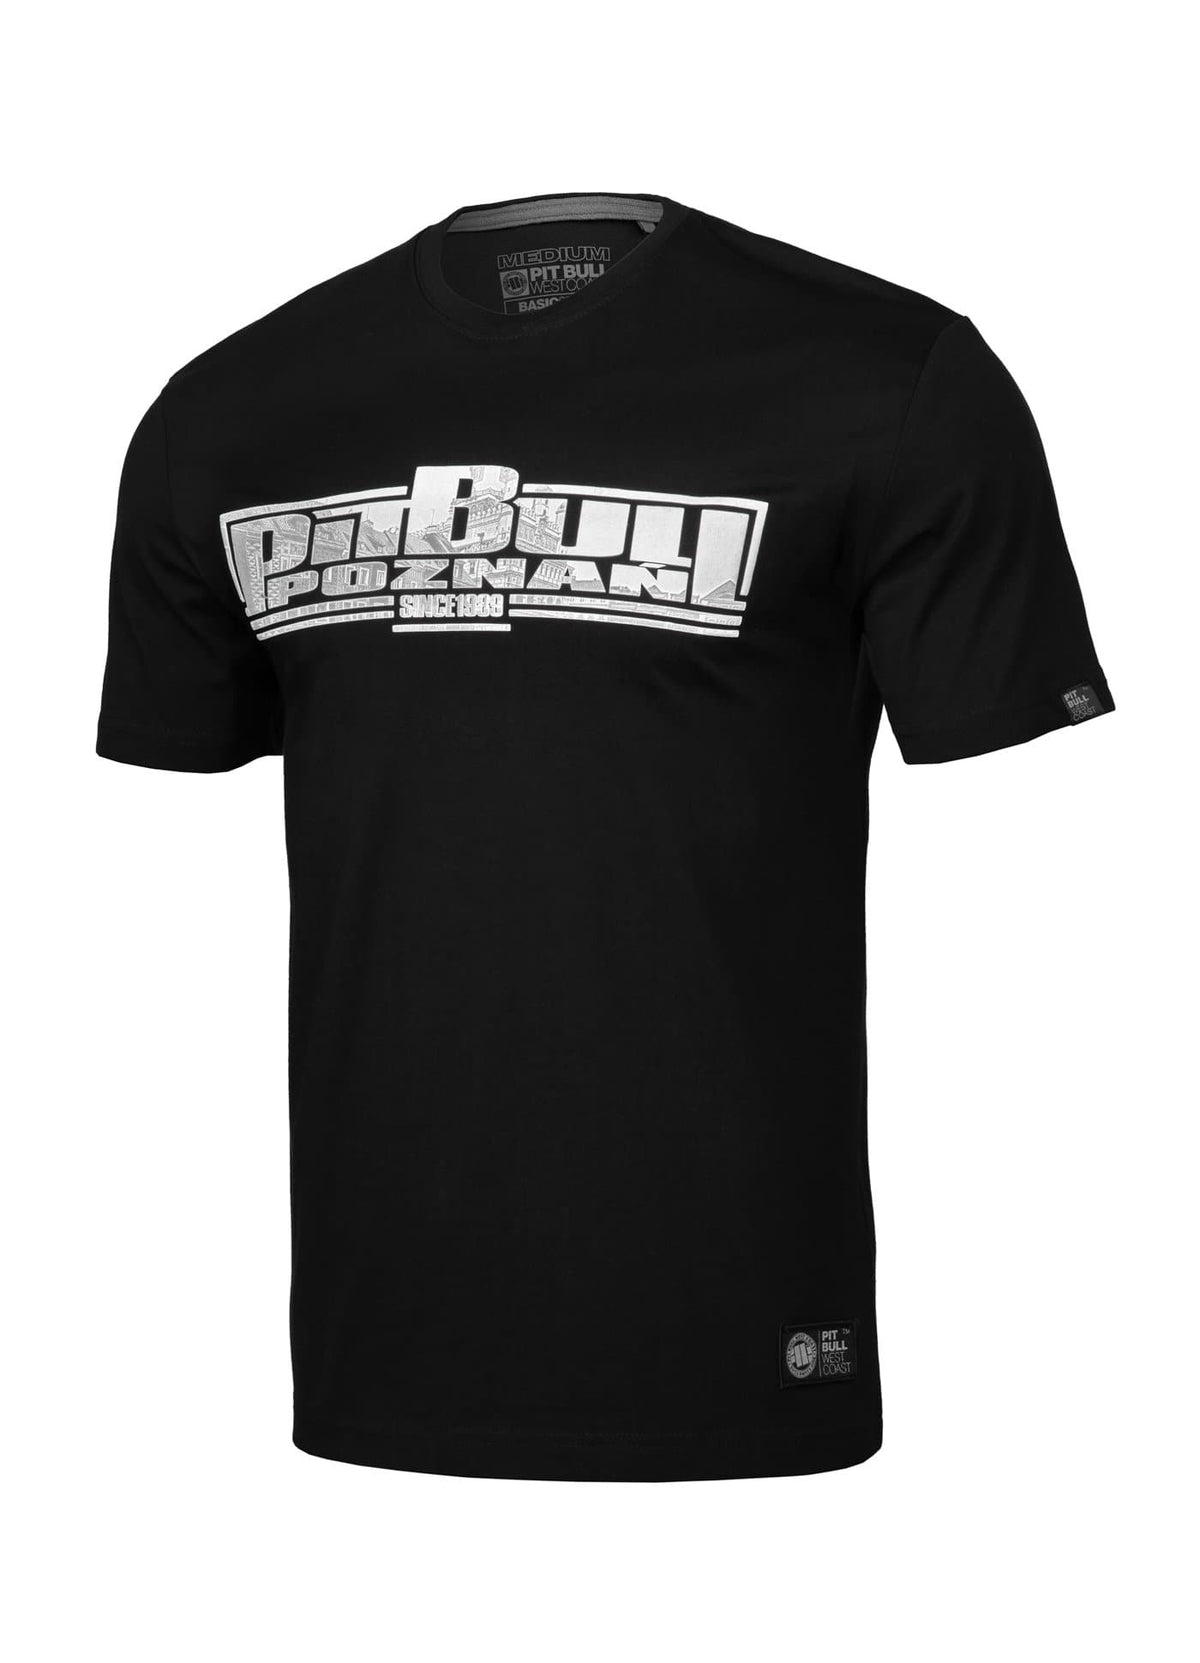 T-shirt CLASSIC BOXING POZNAŃ Black - pitbullwestcoast